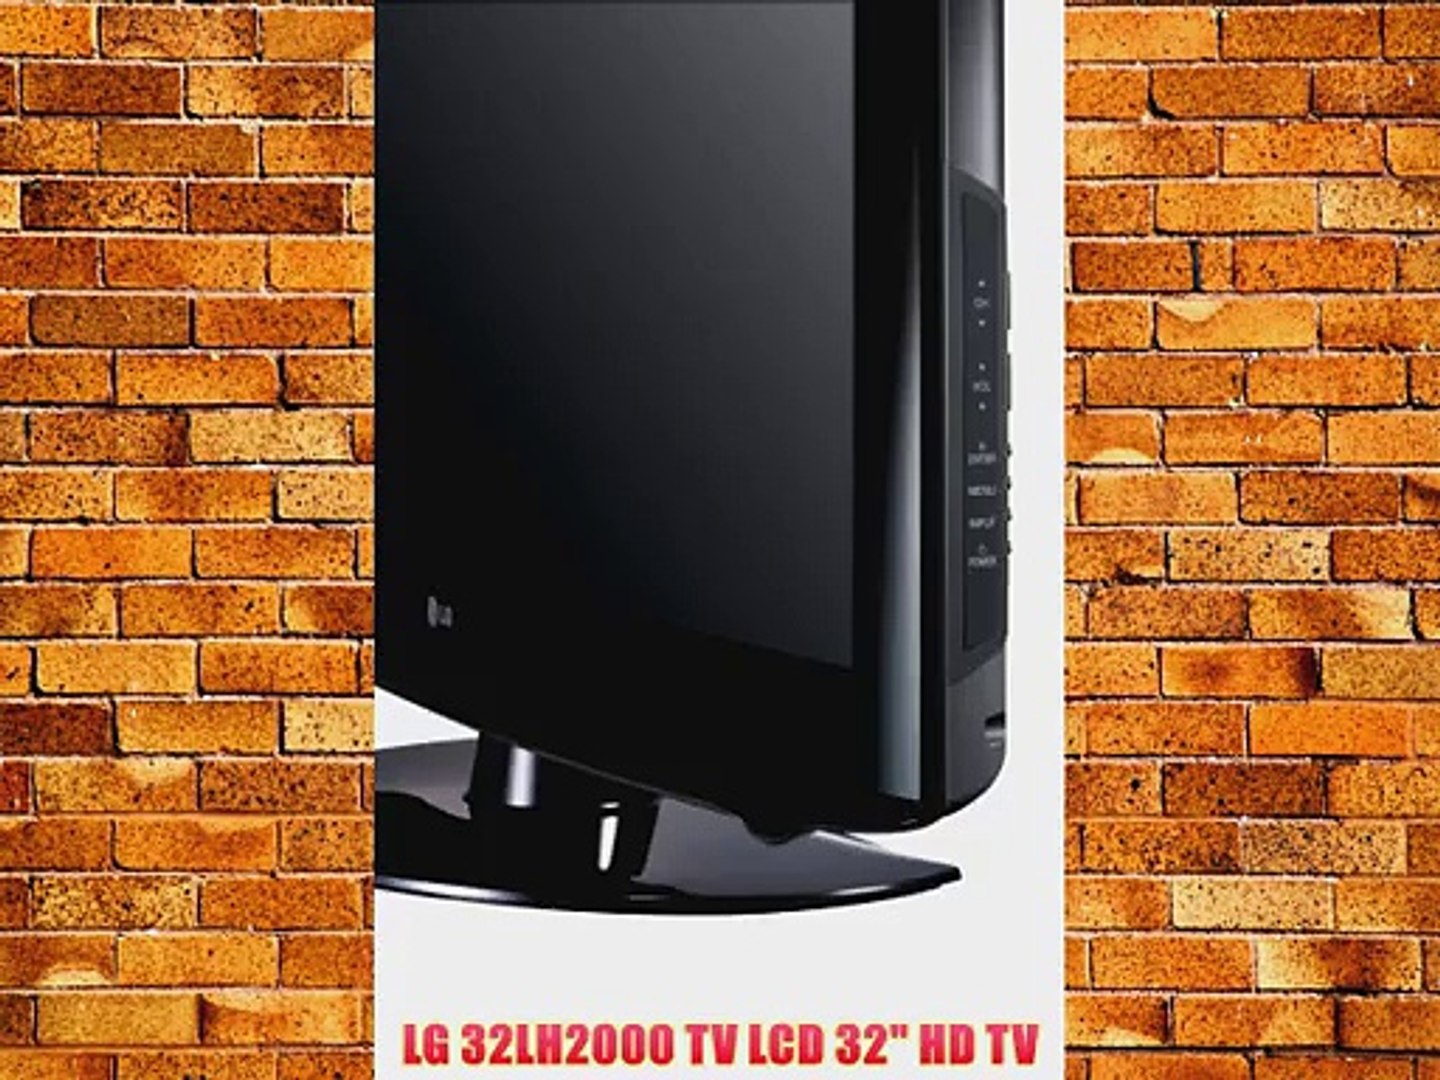 LG 32LH2000 TV LCD 32 HD TV - video Dailymotion